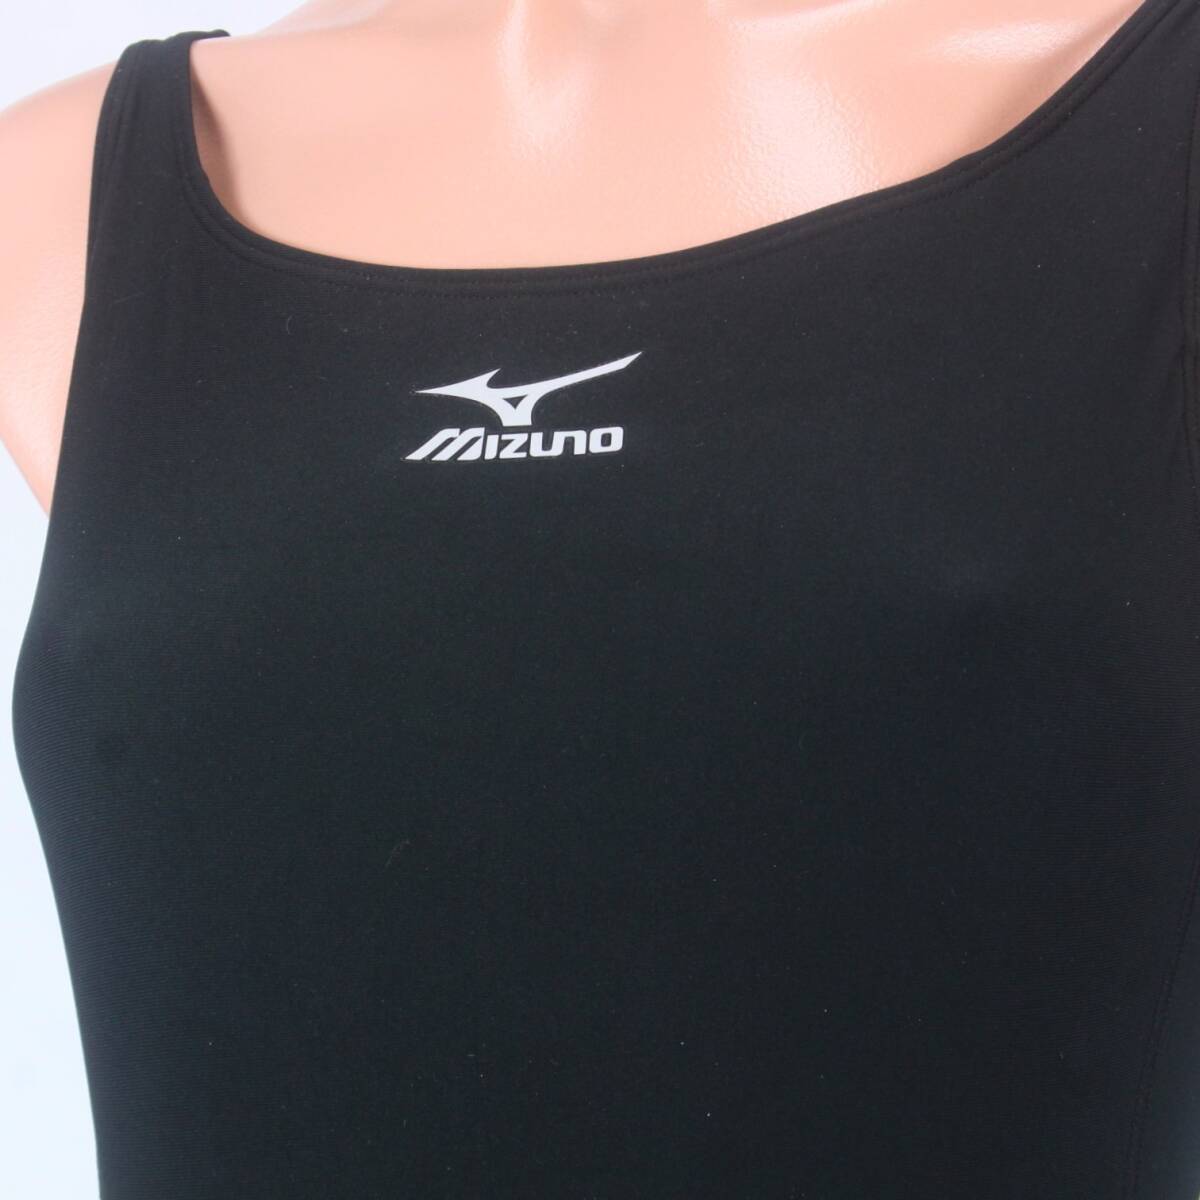 U8620*.. купальный костюм женщина женский детский бюстгальтер k темно-синий чёрный серия все в одном Mizuno S размер плавание плавание одежда плавание бассейн 